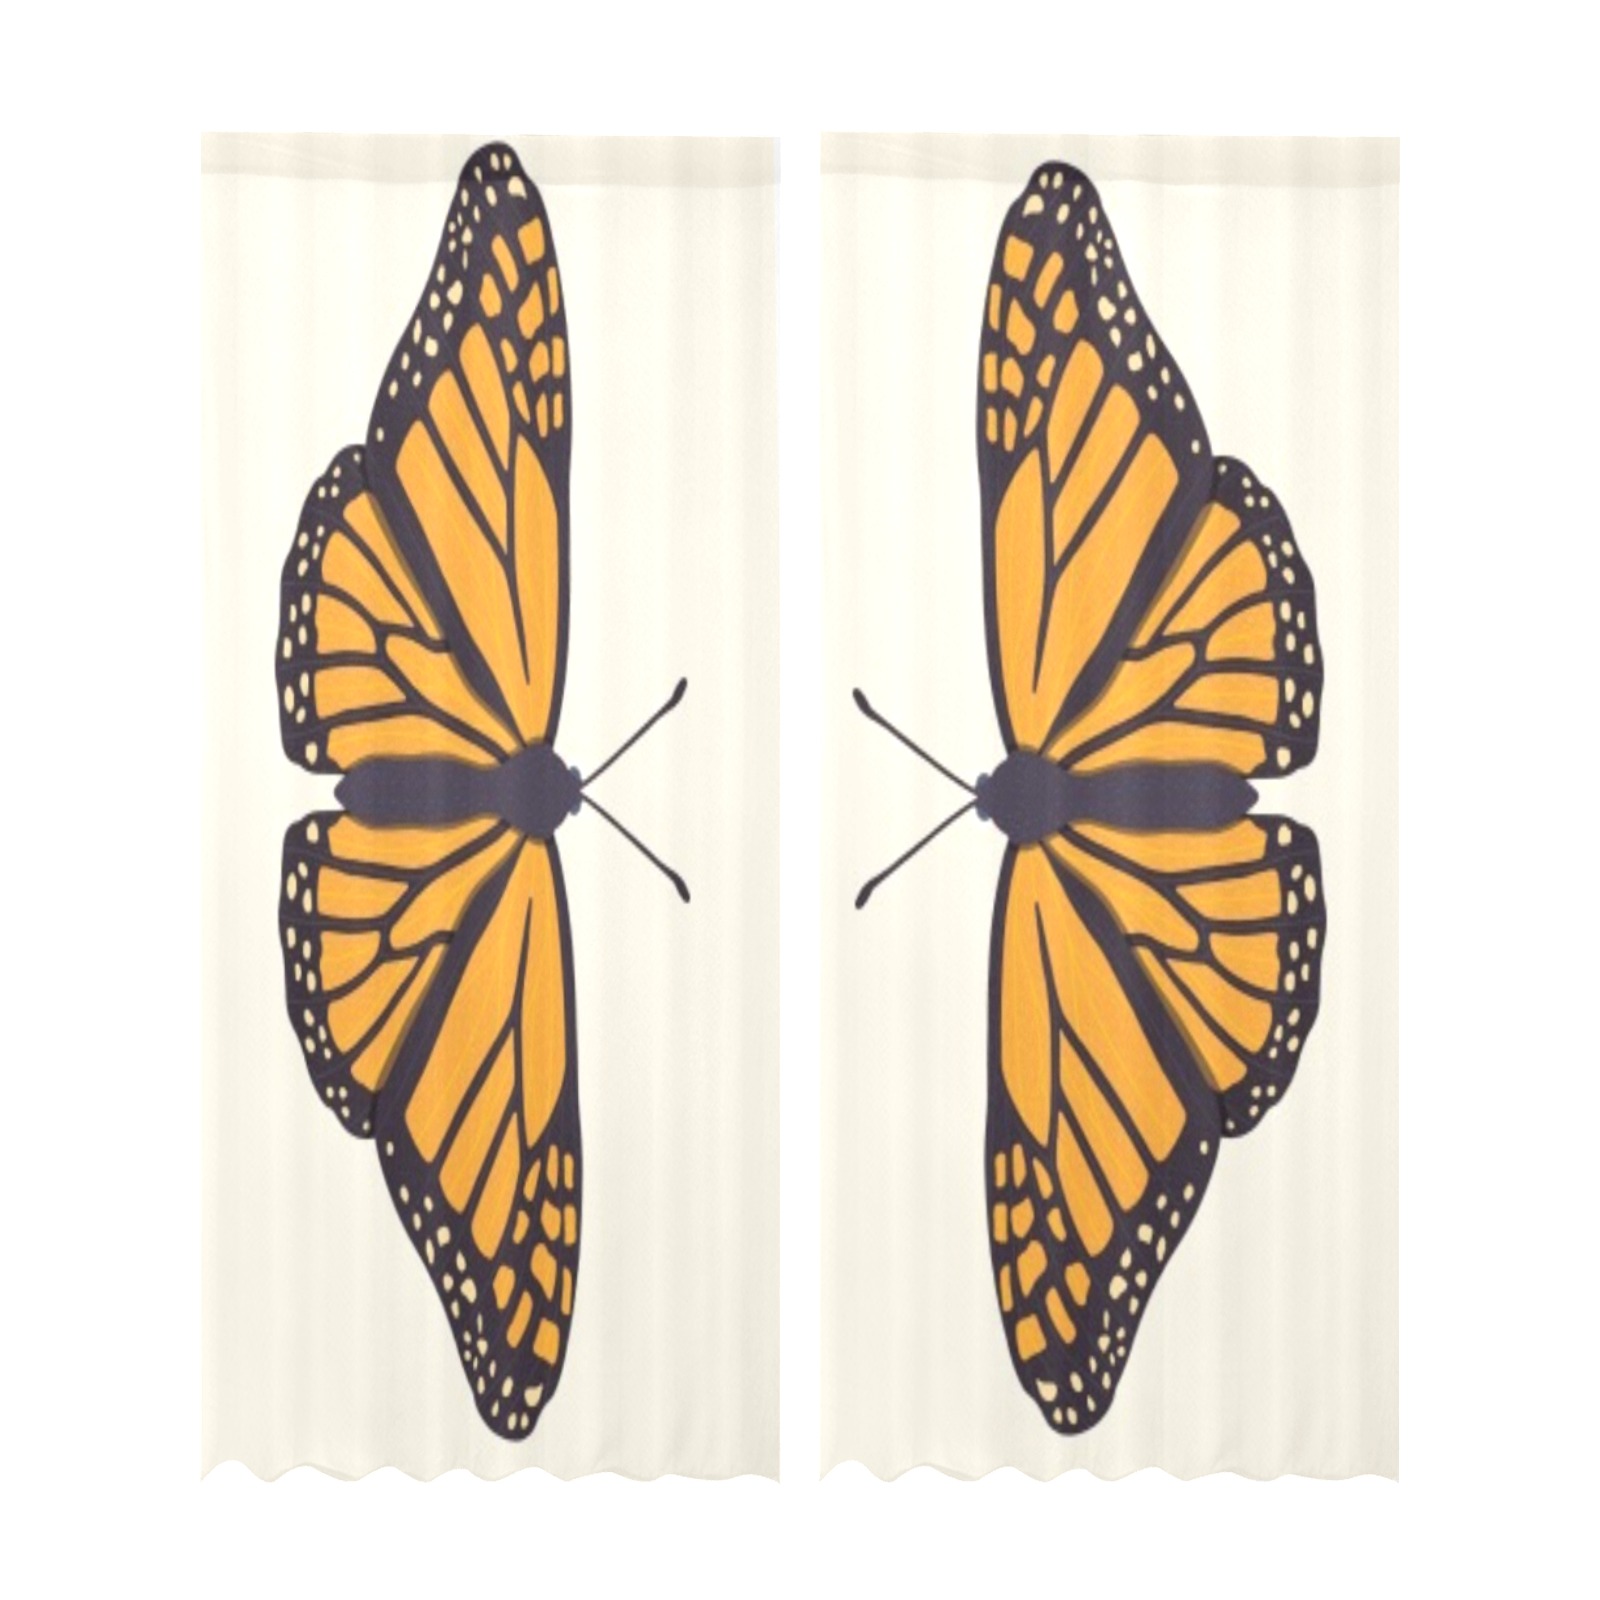 moth Gauze Curtain 28"x95" (Two-Piece)